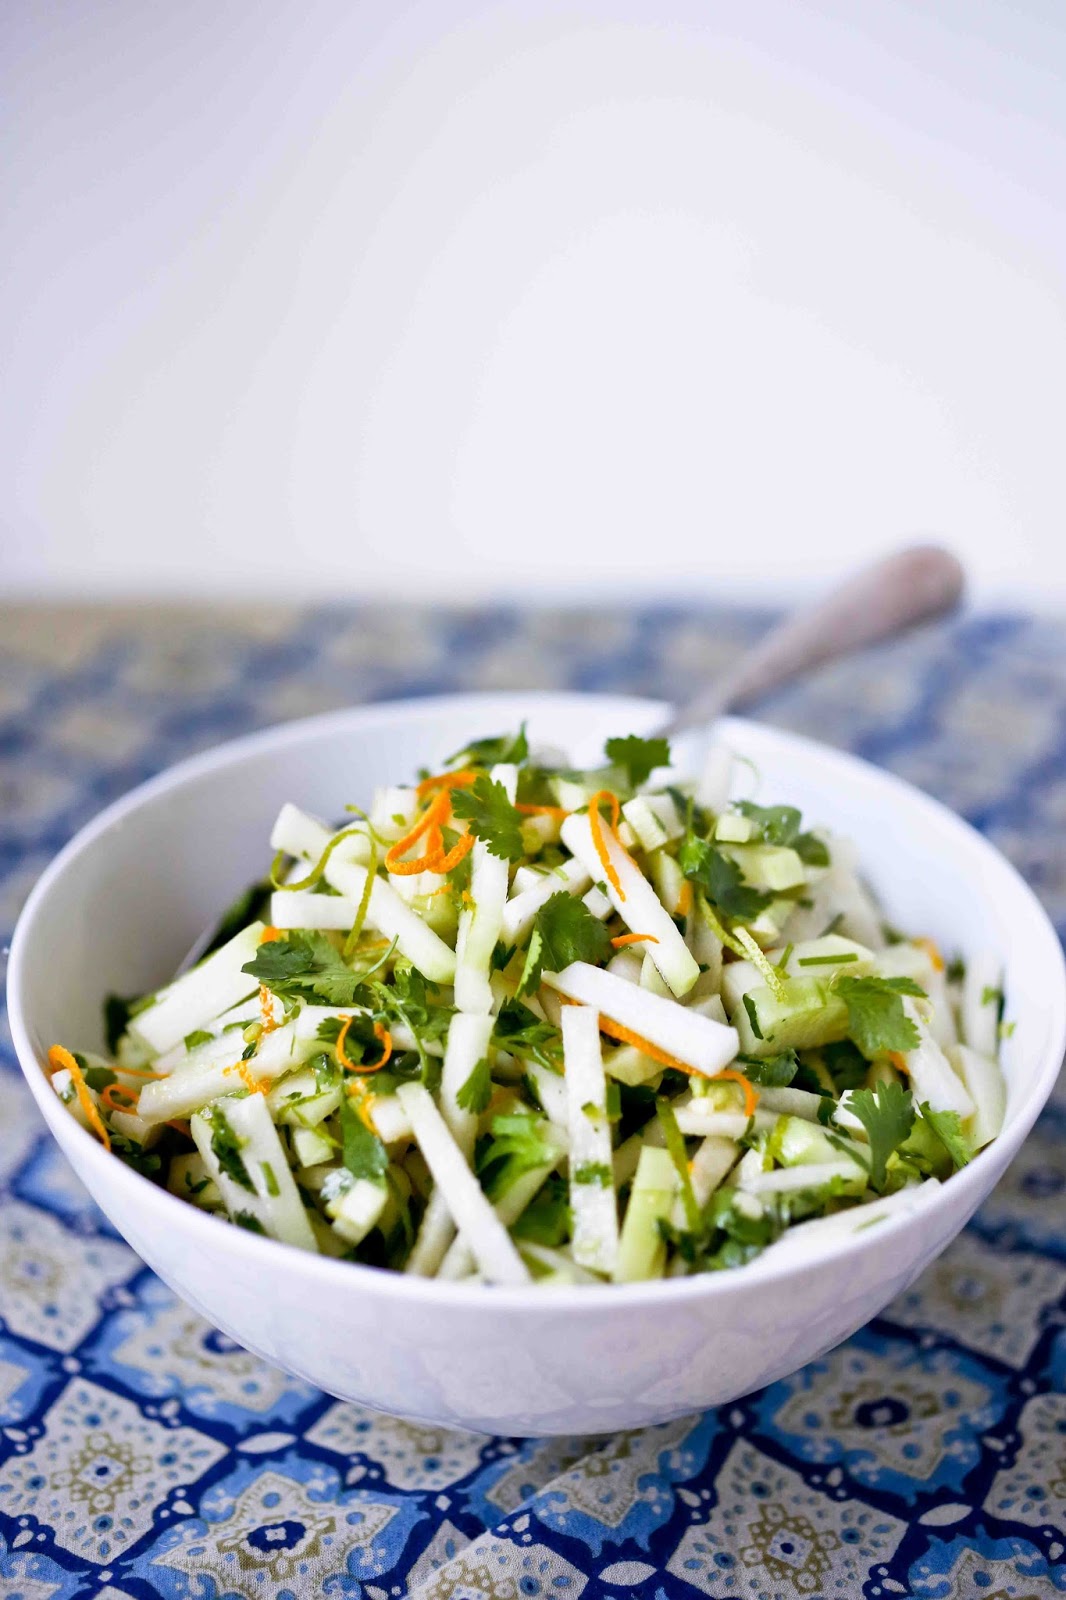 Kohlrabi Salad with Cilantro and Lime